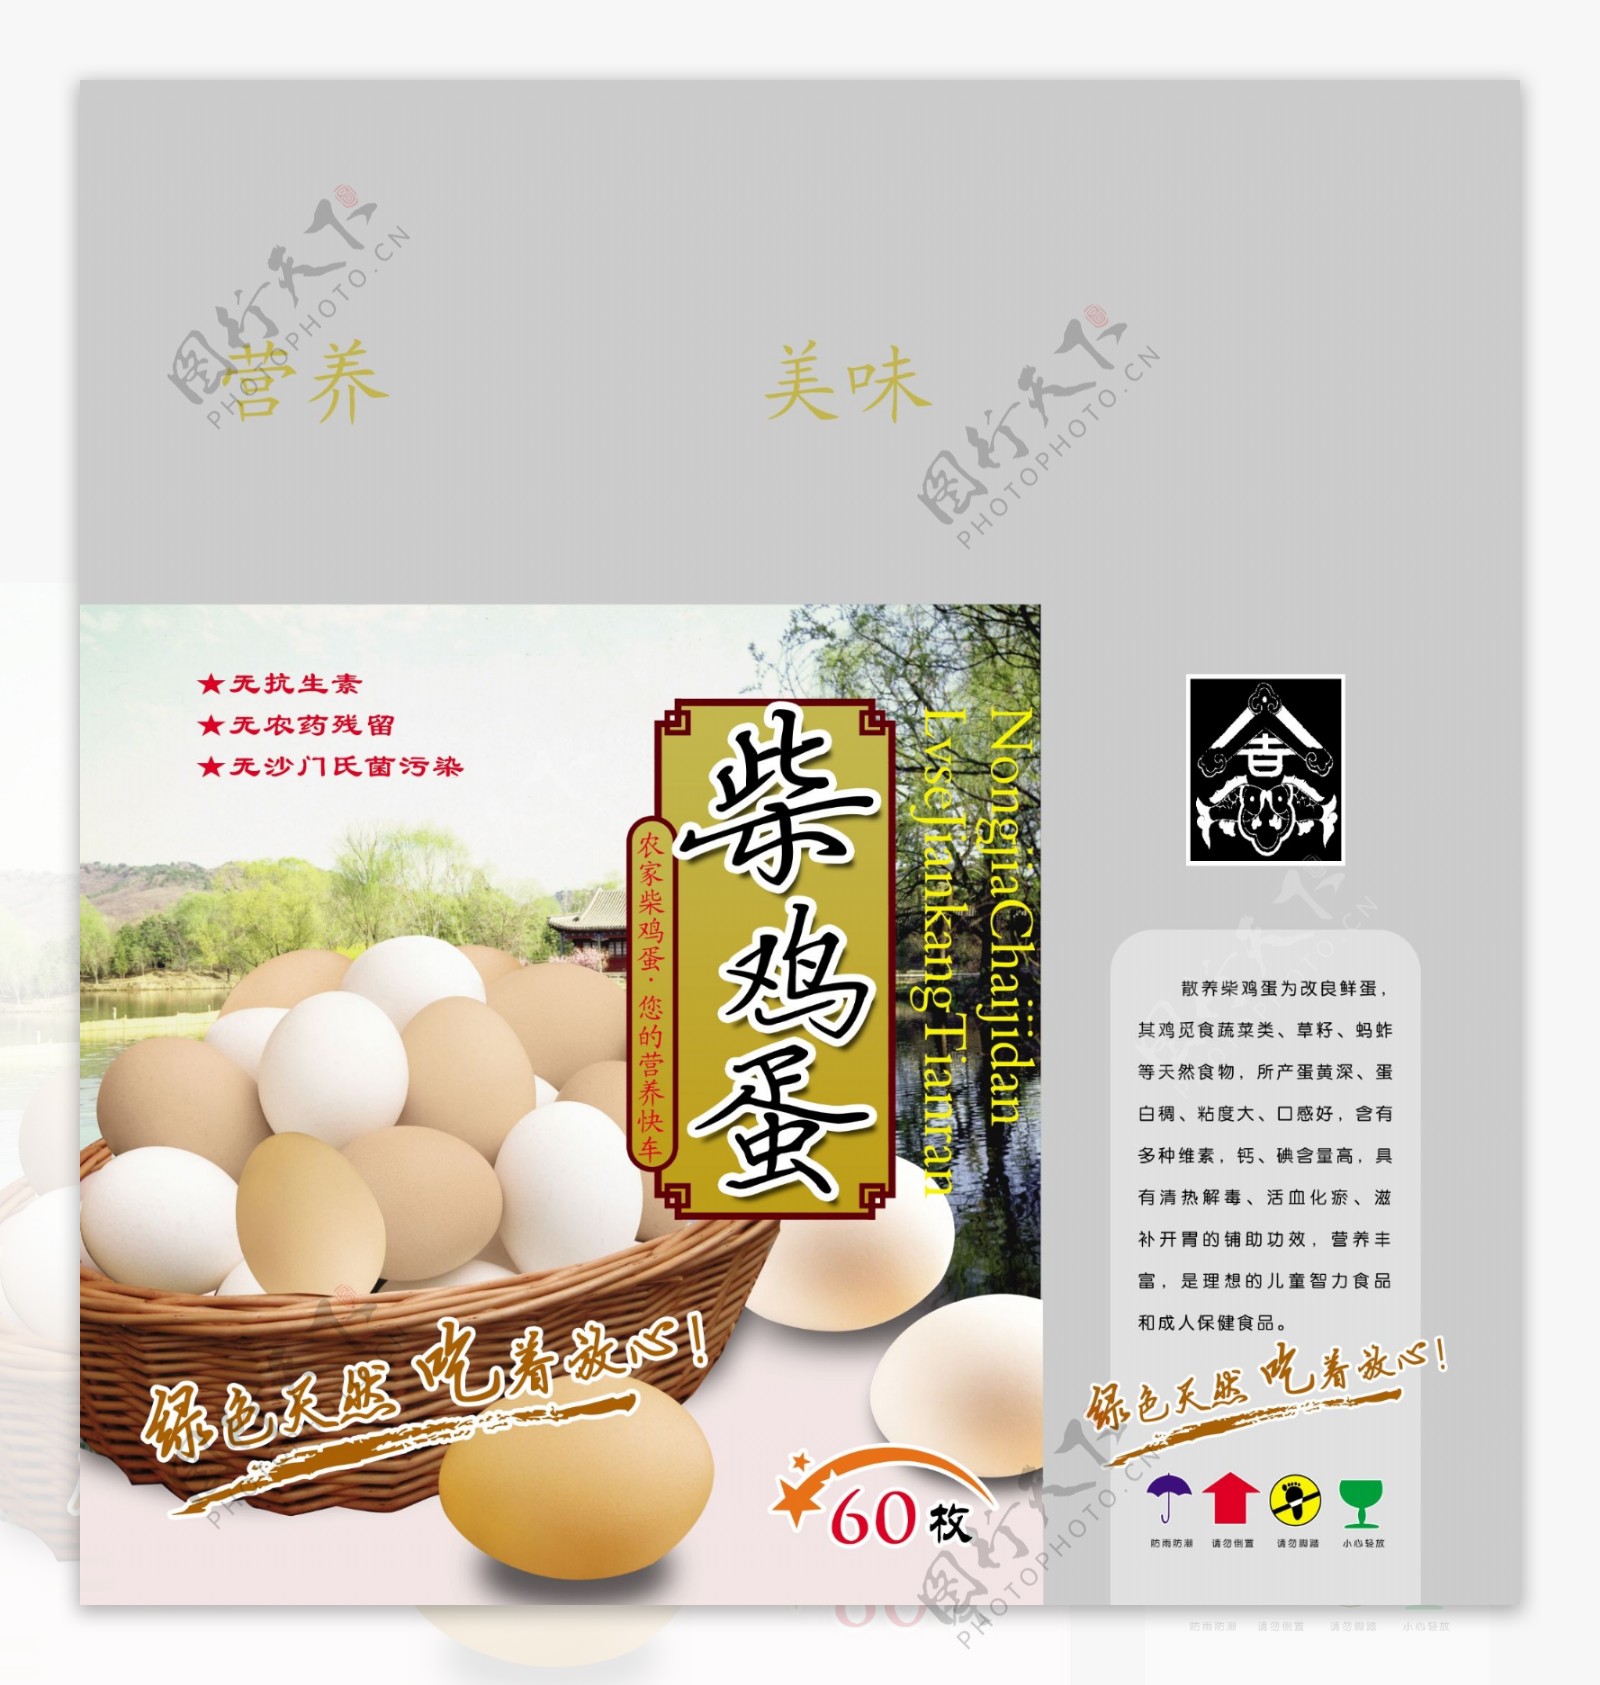 鸡蛋箱鸡蛋包装箱鸡蛋竹篮广告设计模板包装设计